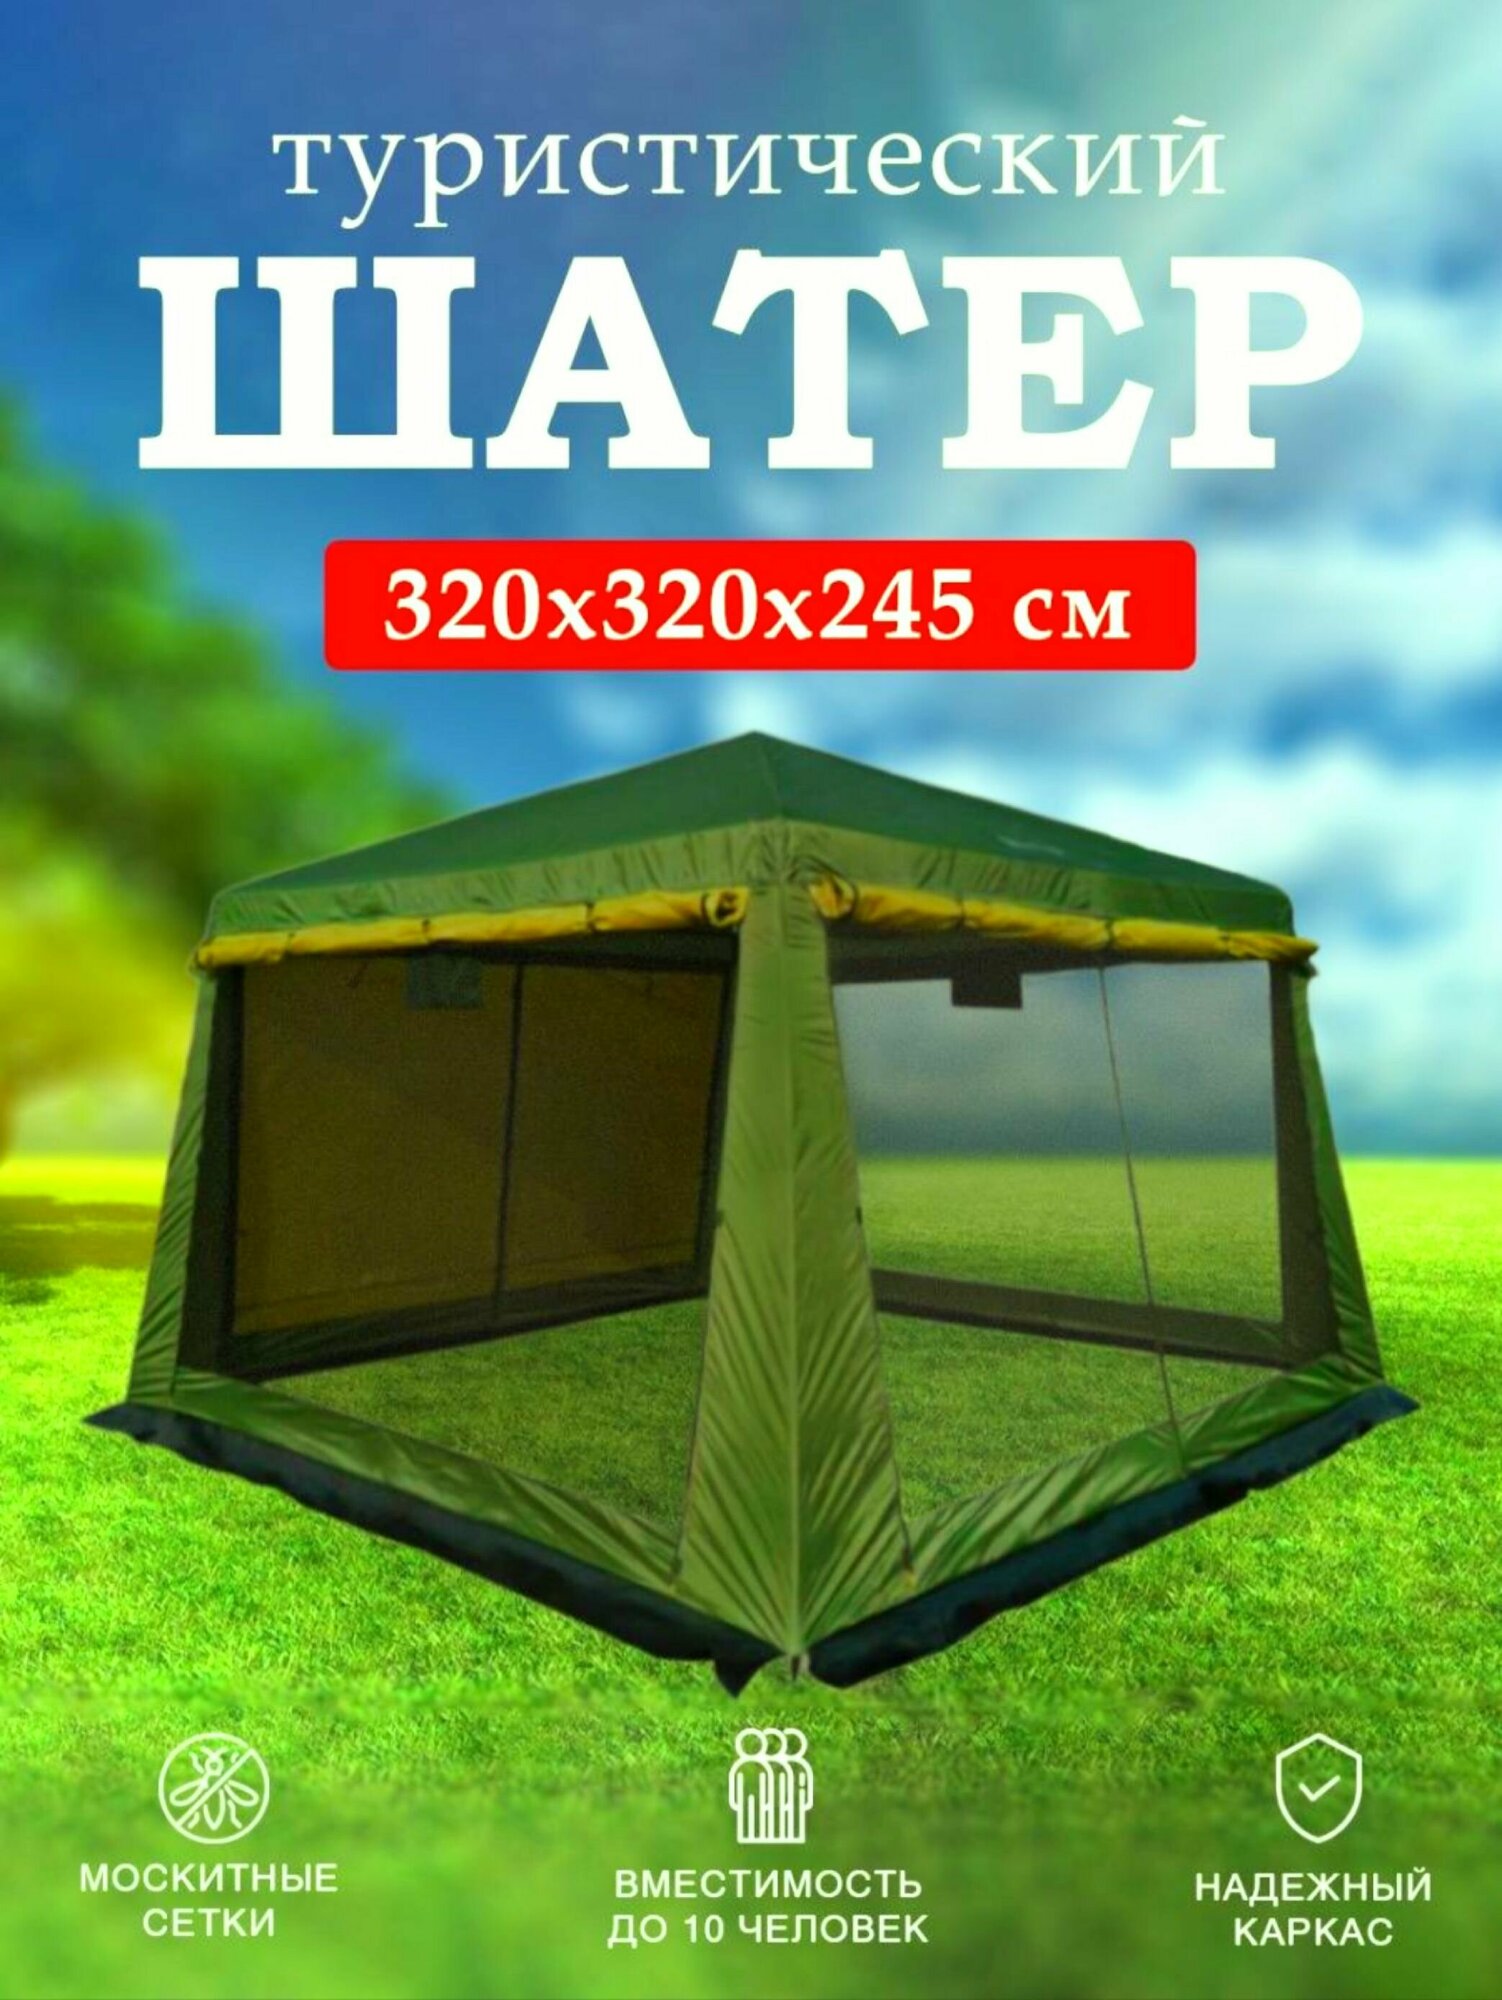 Палатка-шатер-кухня ветрозащитная юбка усиленный каркас Для кемпинга, рыбалки, дачи, торговая, для мероприятий